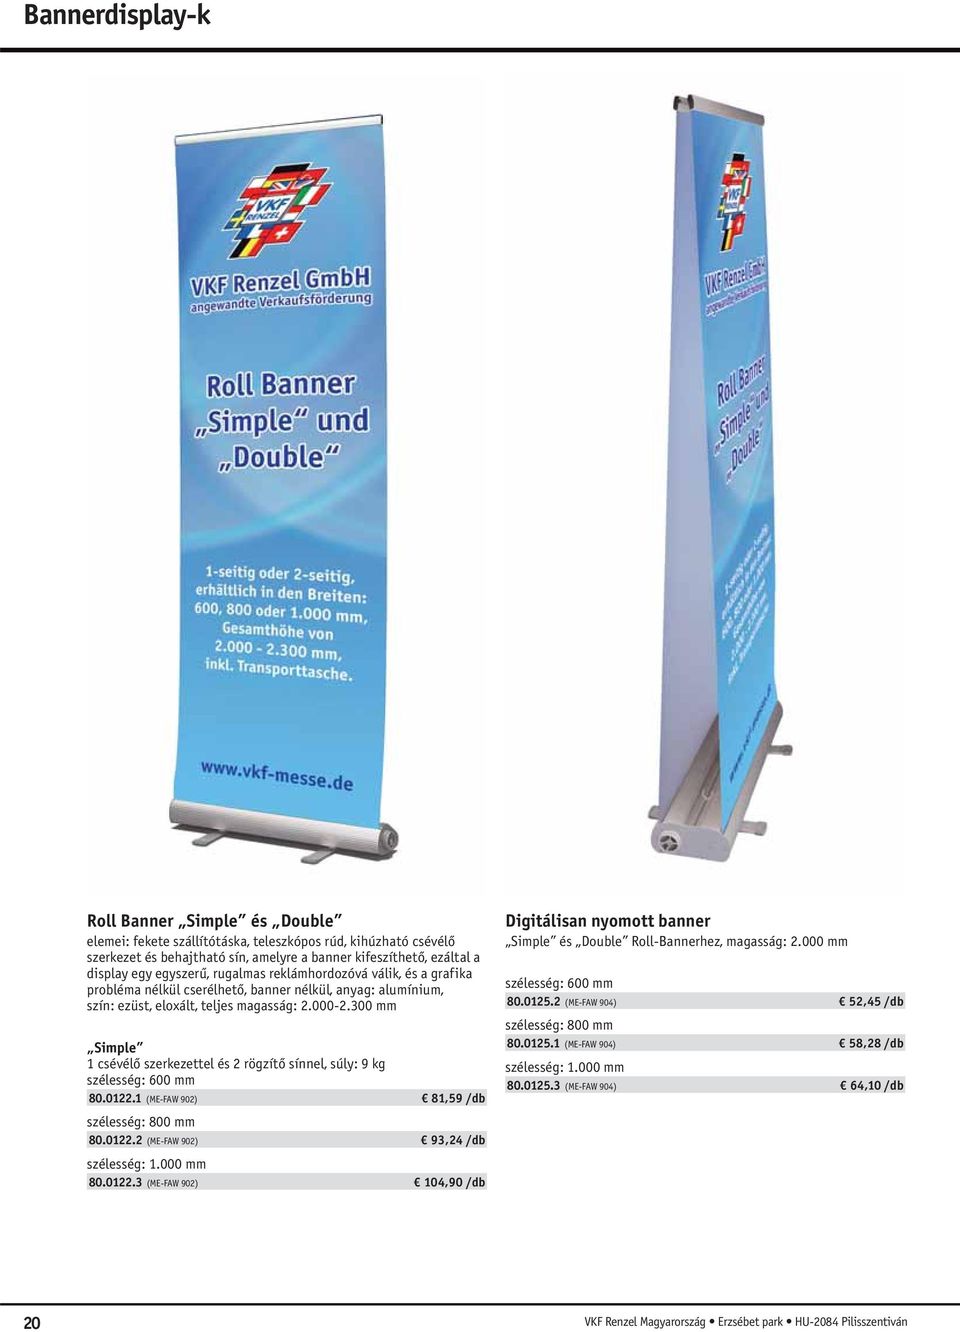 300 mm Simple 1 csévélő szerkezettel és 2 rögzítő sínnel, súly: 9 kg szélesség: 600 mm 80.0122.1 (ME-FAW 902) 81,59 /db szélesség: 800 mm 80.0122.2 (ME-FAW 902) 93,24 /db szélesség: 1.000 mm 80.0122.3 (ME-FAW 902) 104,90 /db Digitálisan nyomott banner Simple és Double Roll-Bannerhez, magasság: 2.